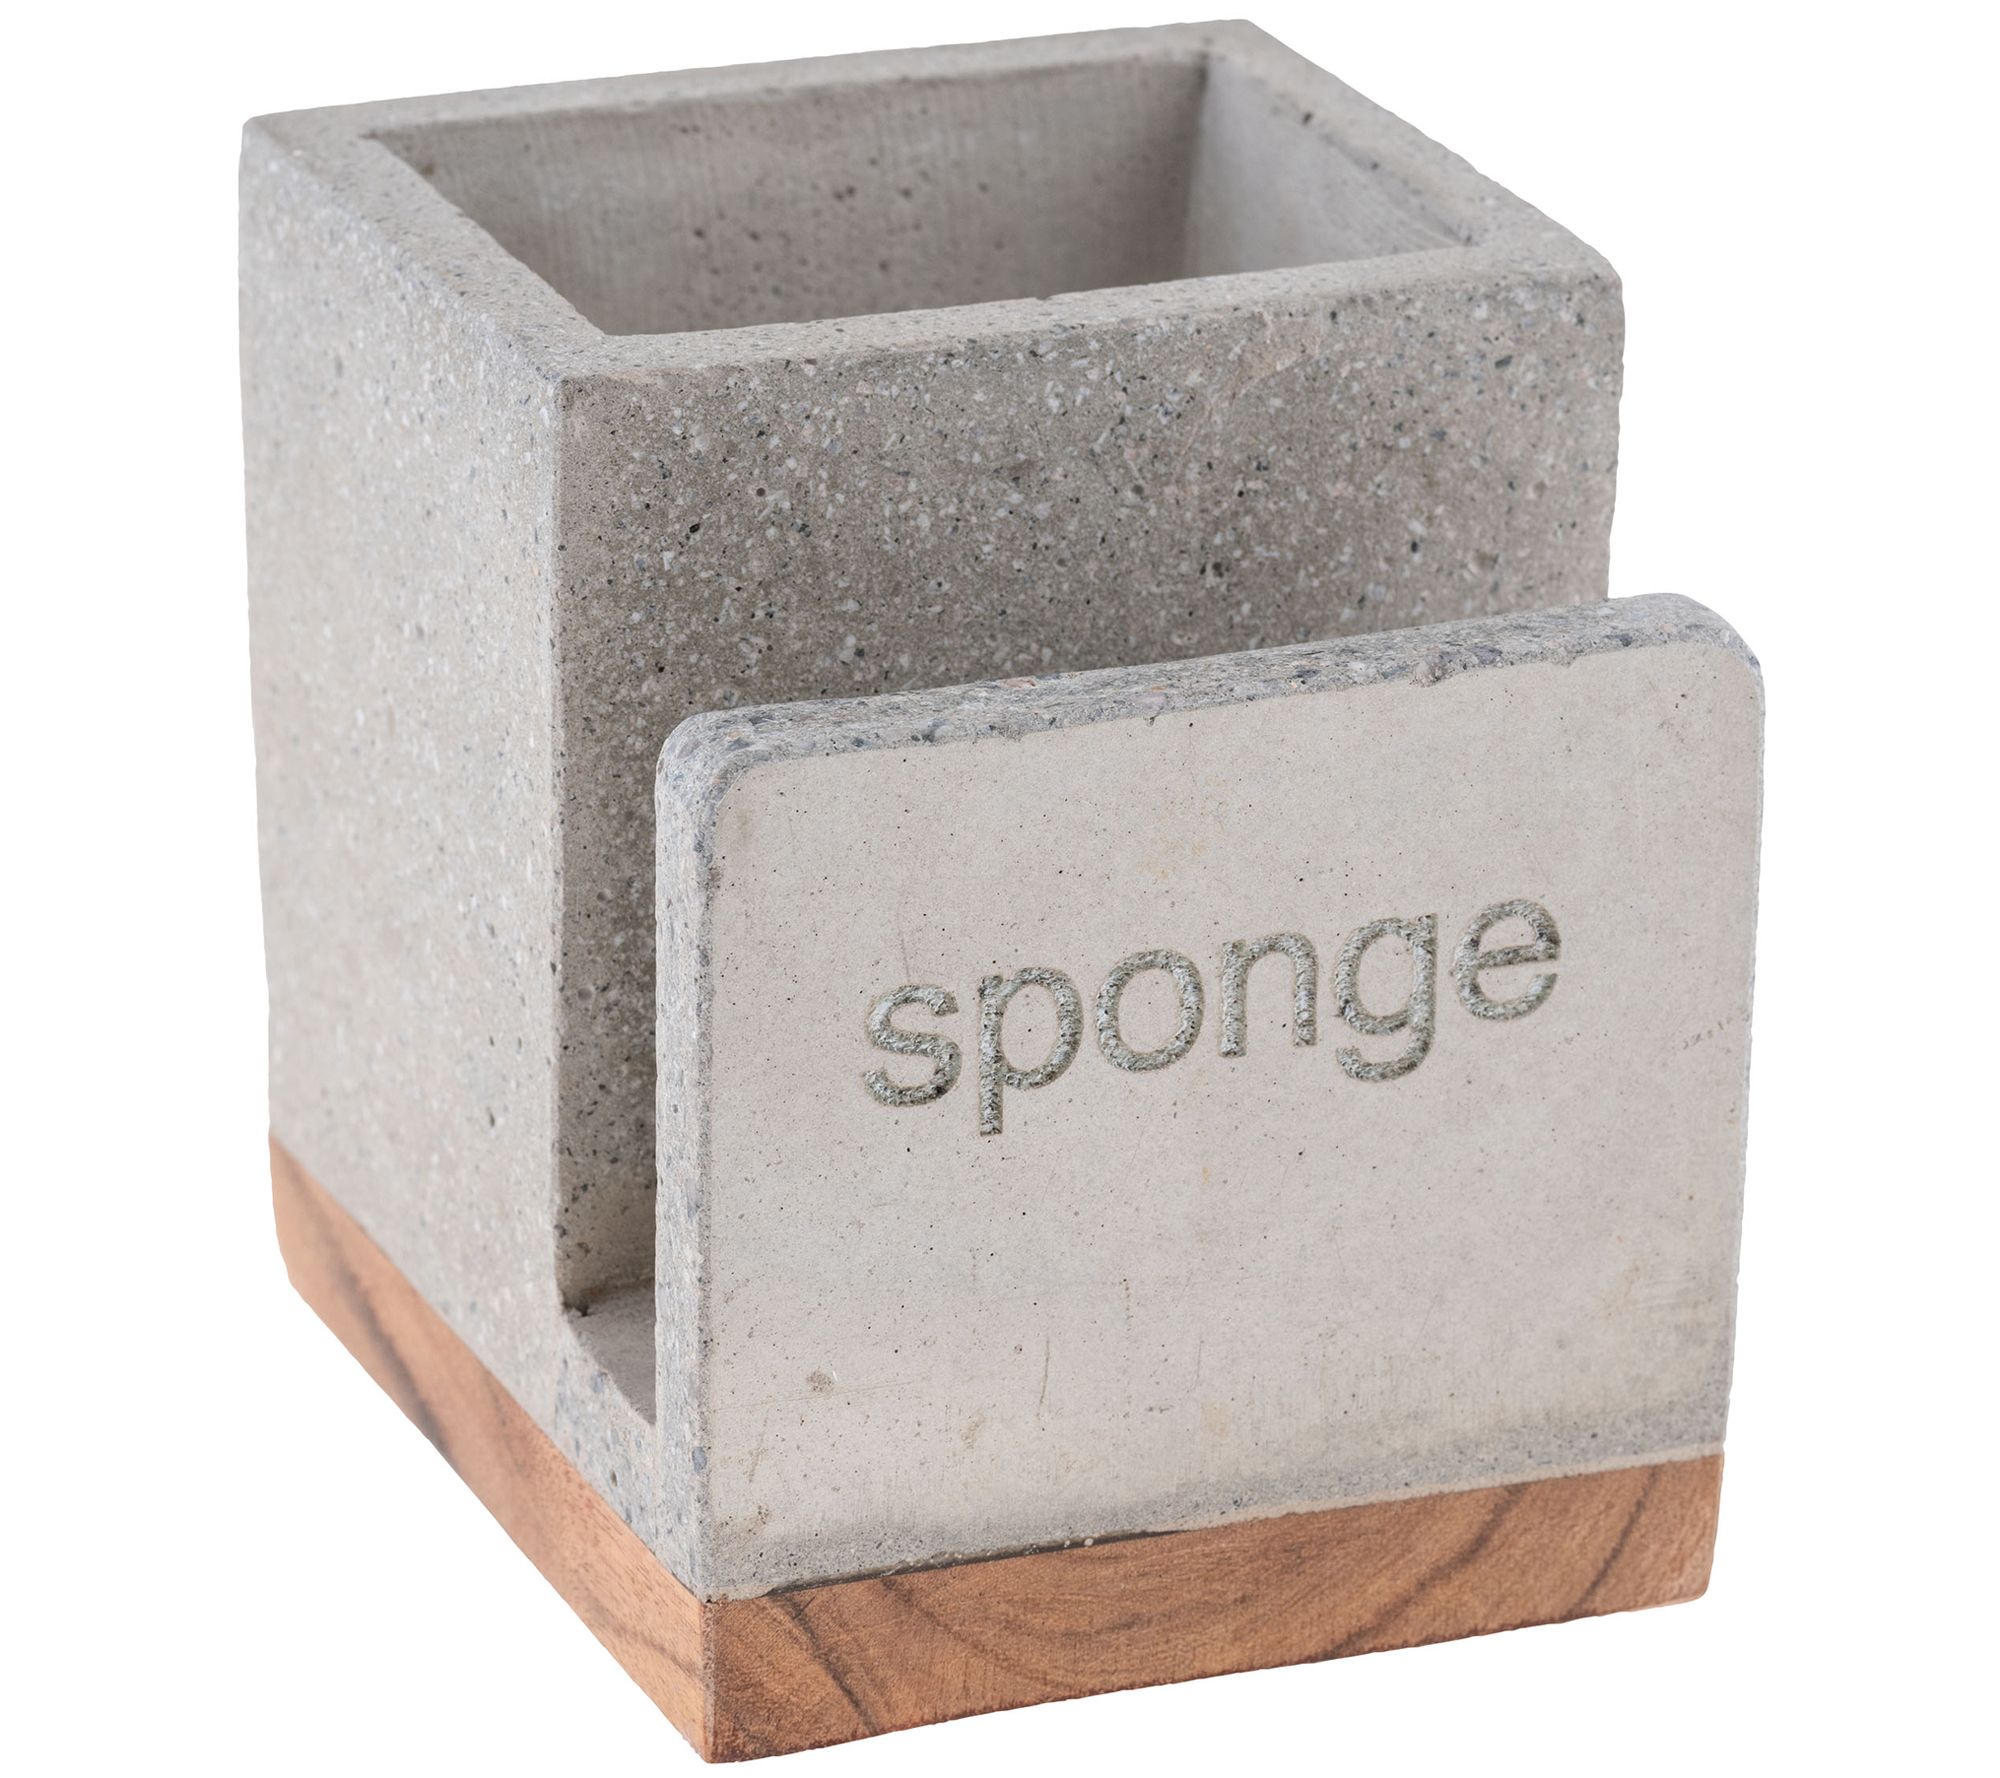 Concrete Sponge Rest